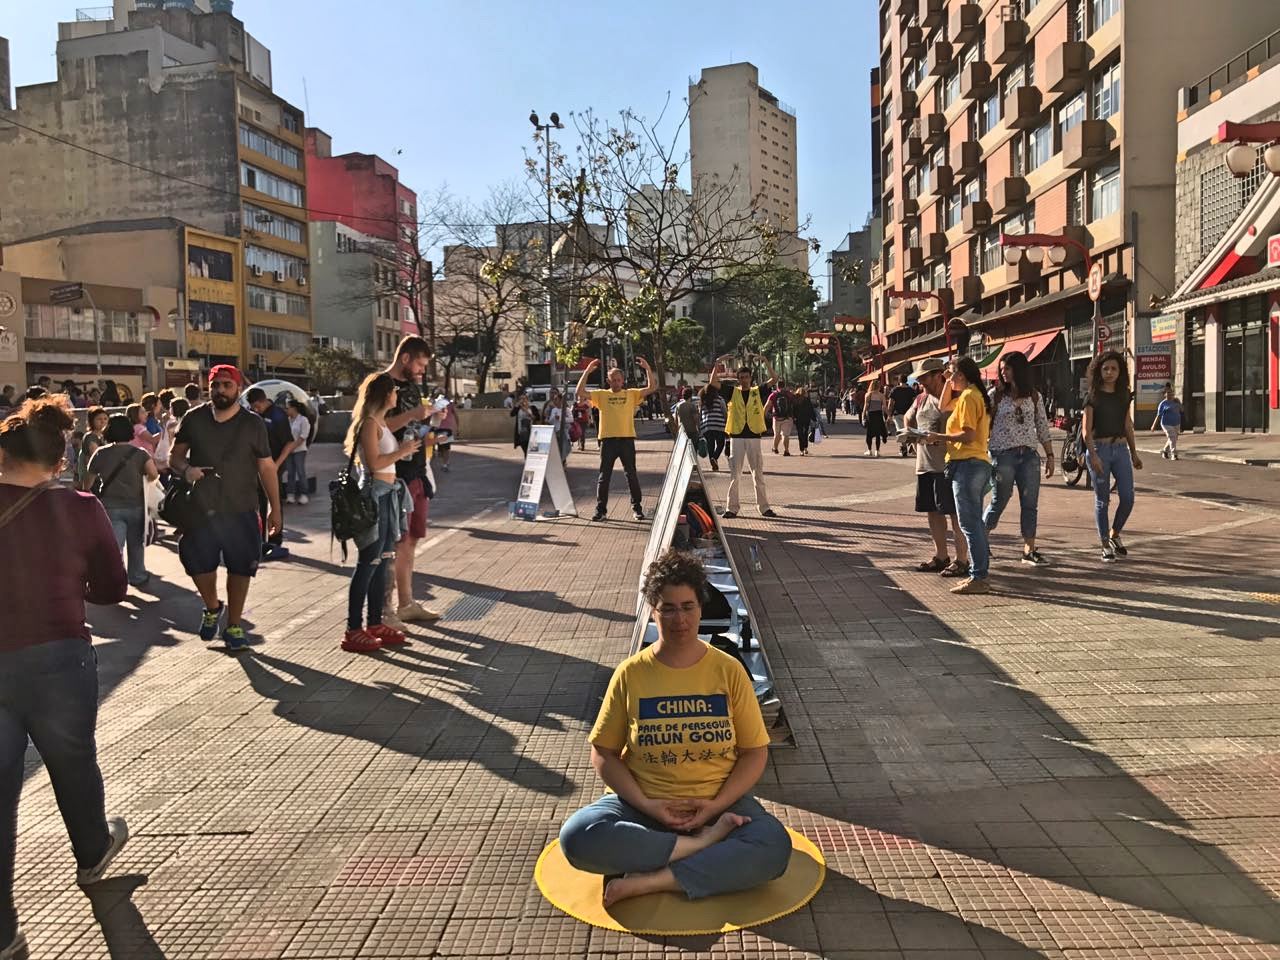 Image for article São Paulo, Brasil: praticantes realizam manifestação pacífica de 20 de julho para parar a perseguição ao Falun Gong na China